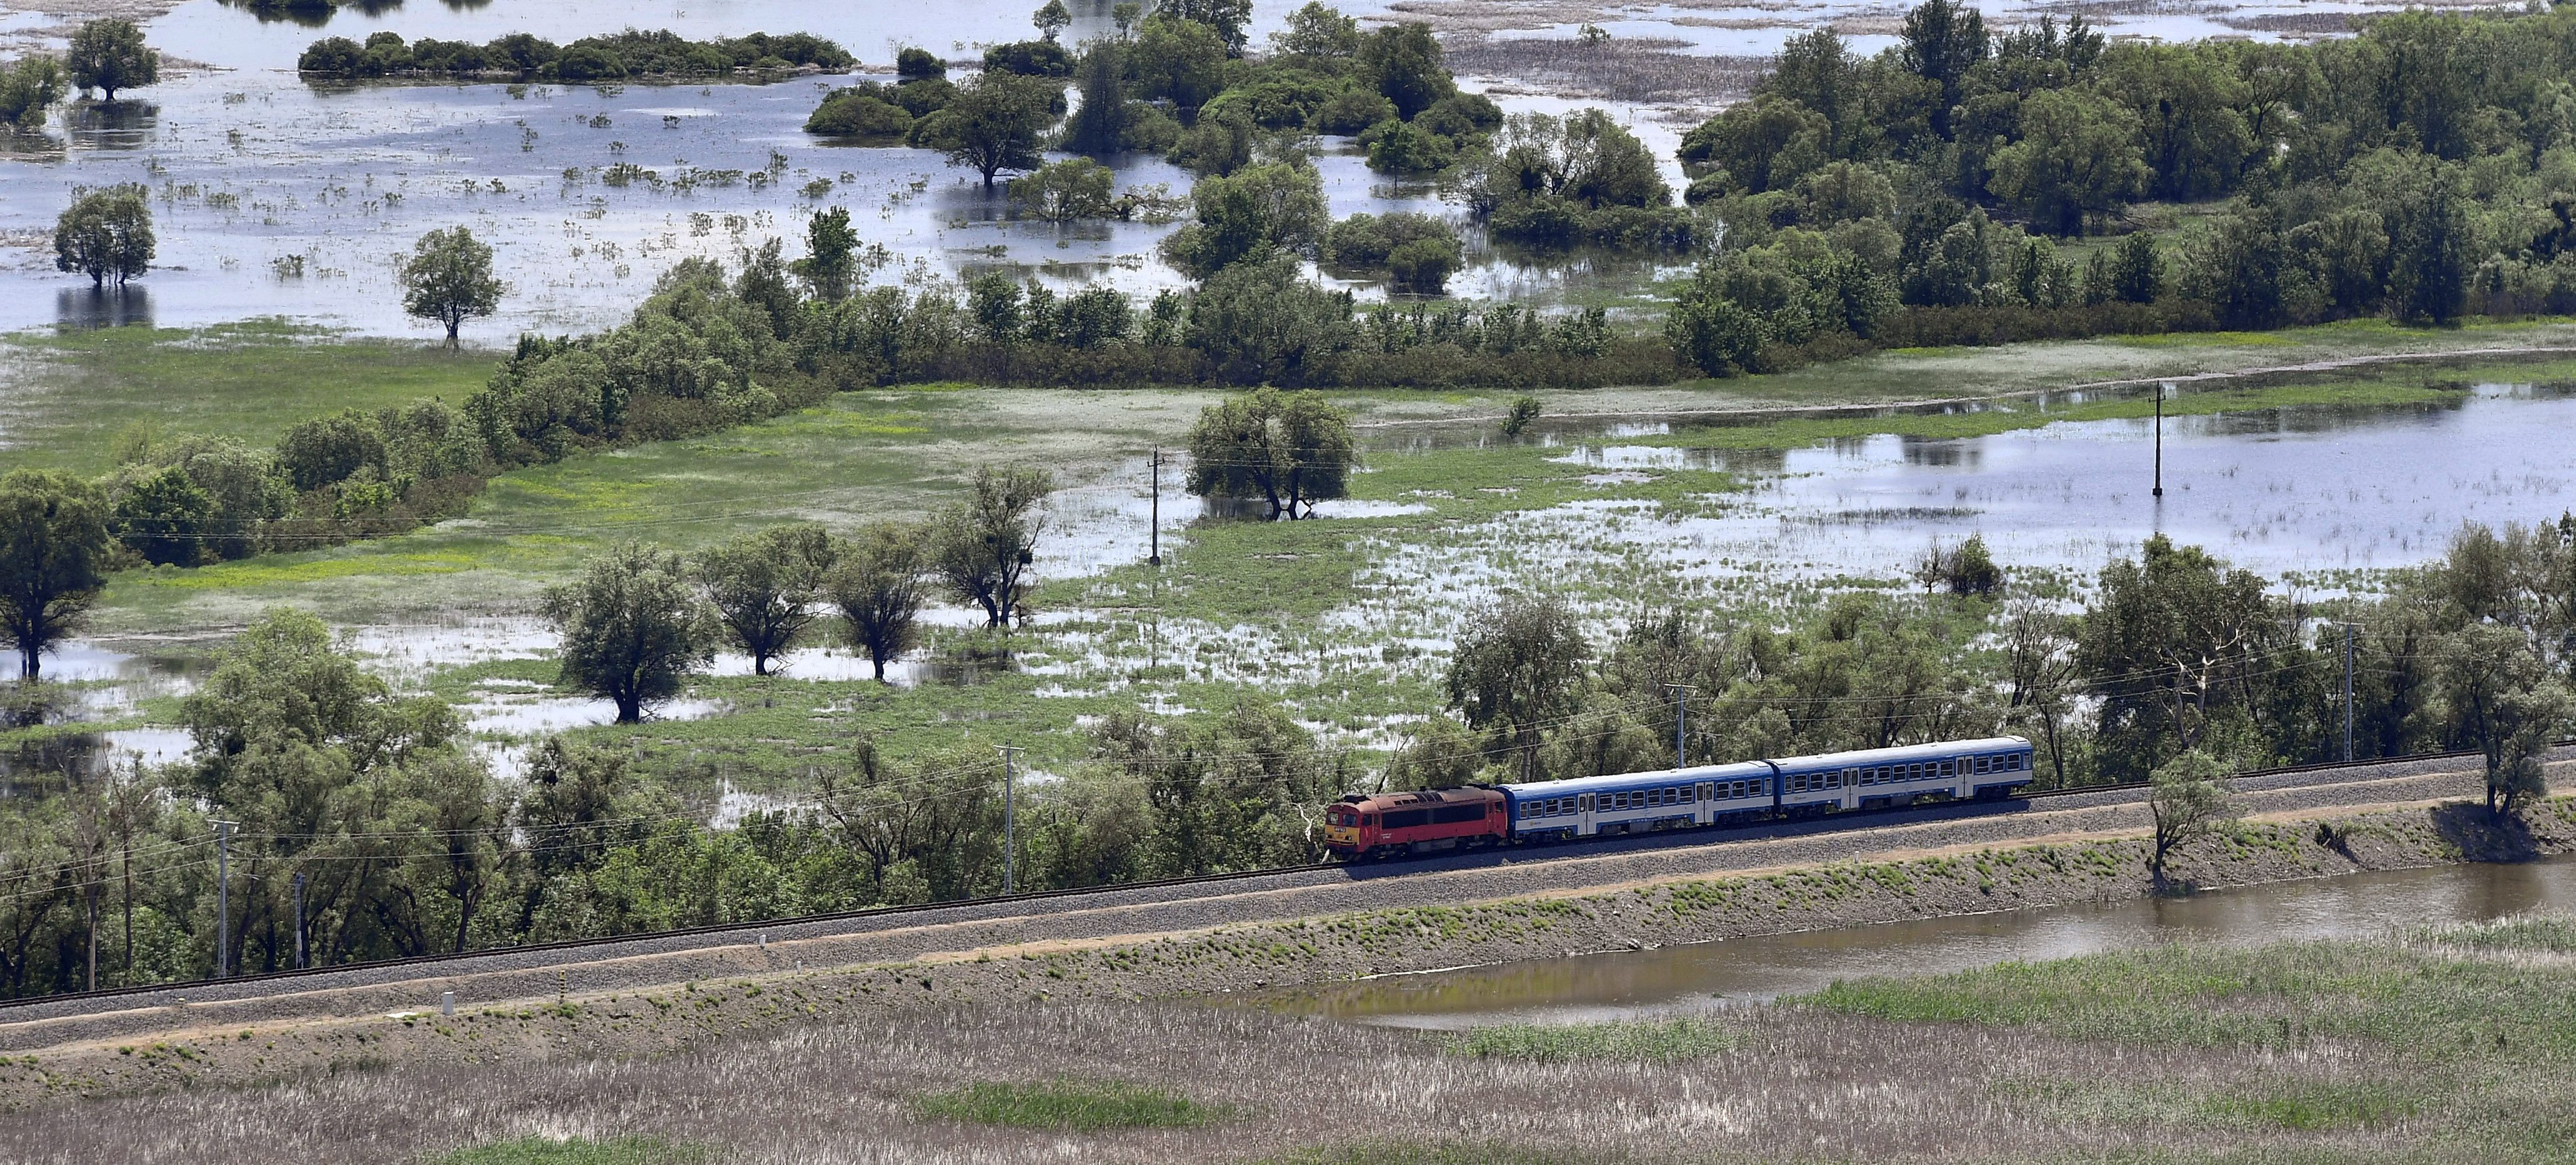 ハンガリー鉄道